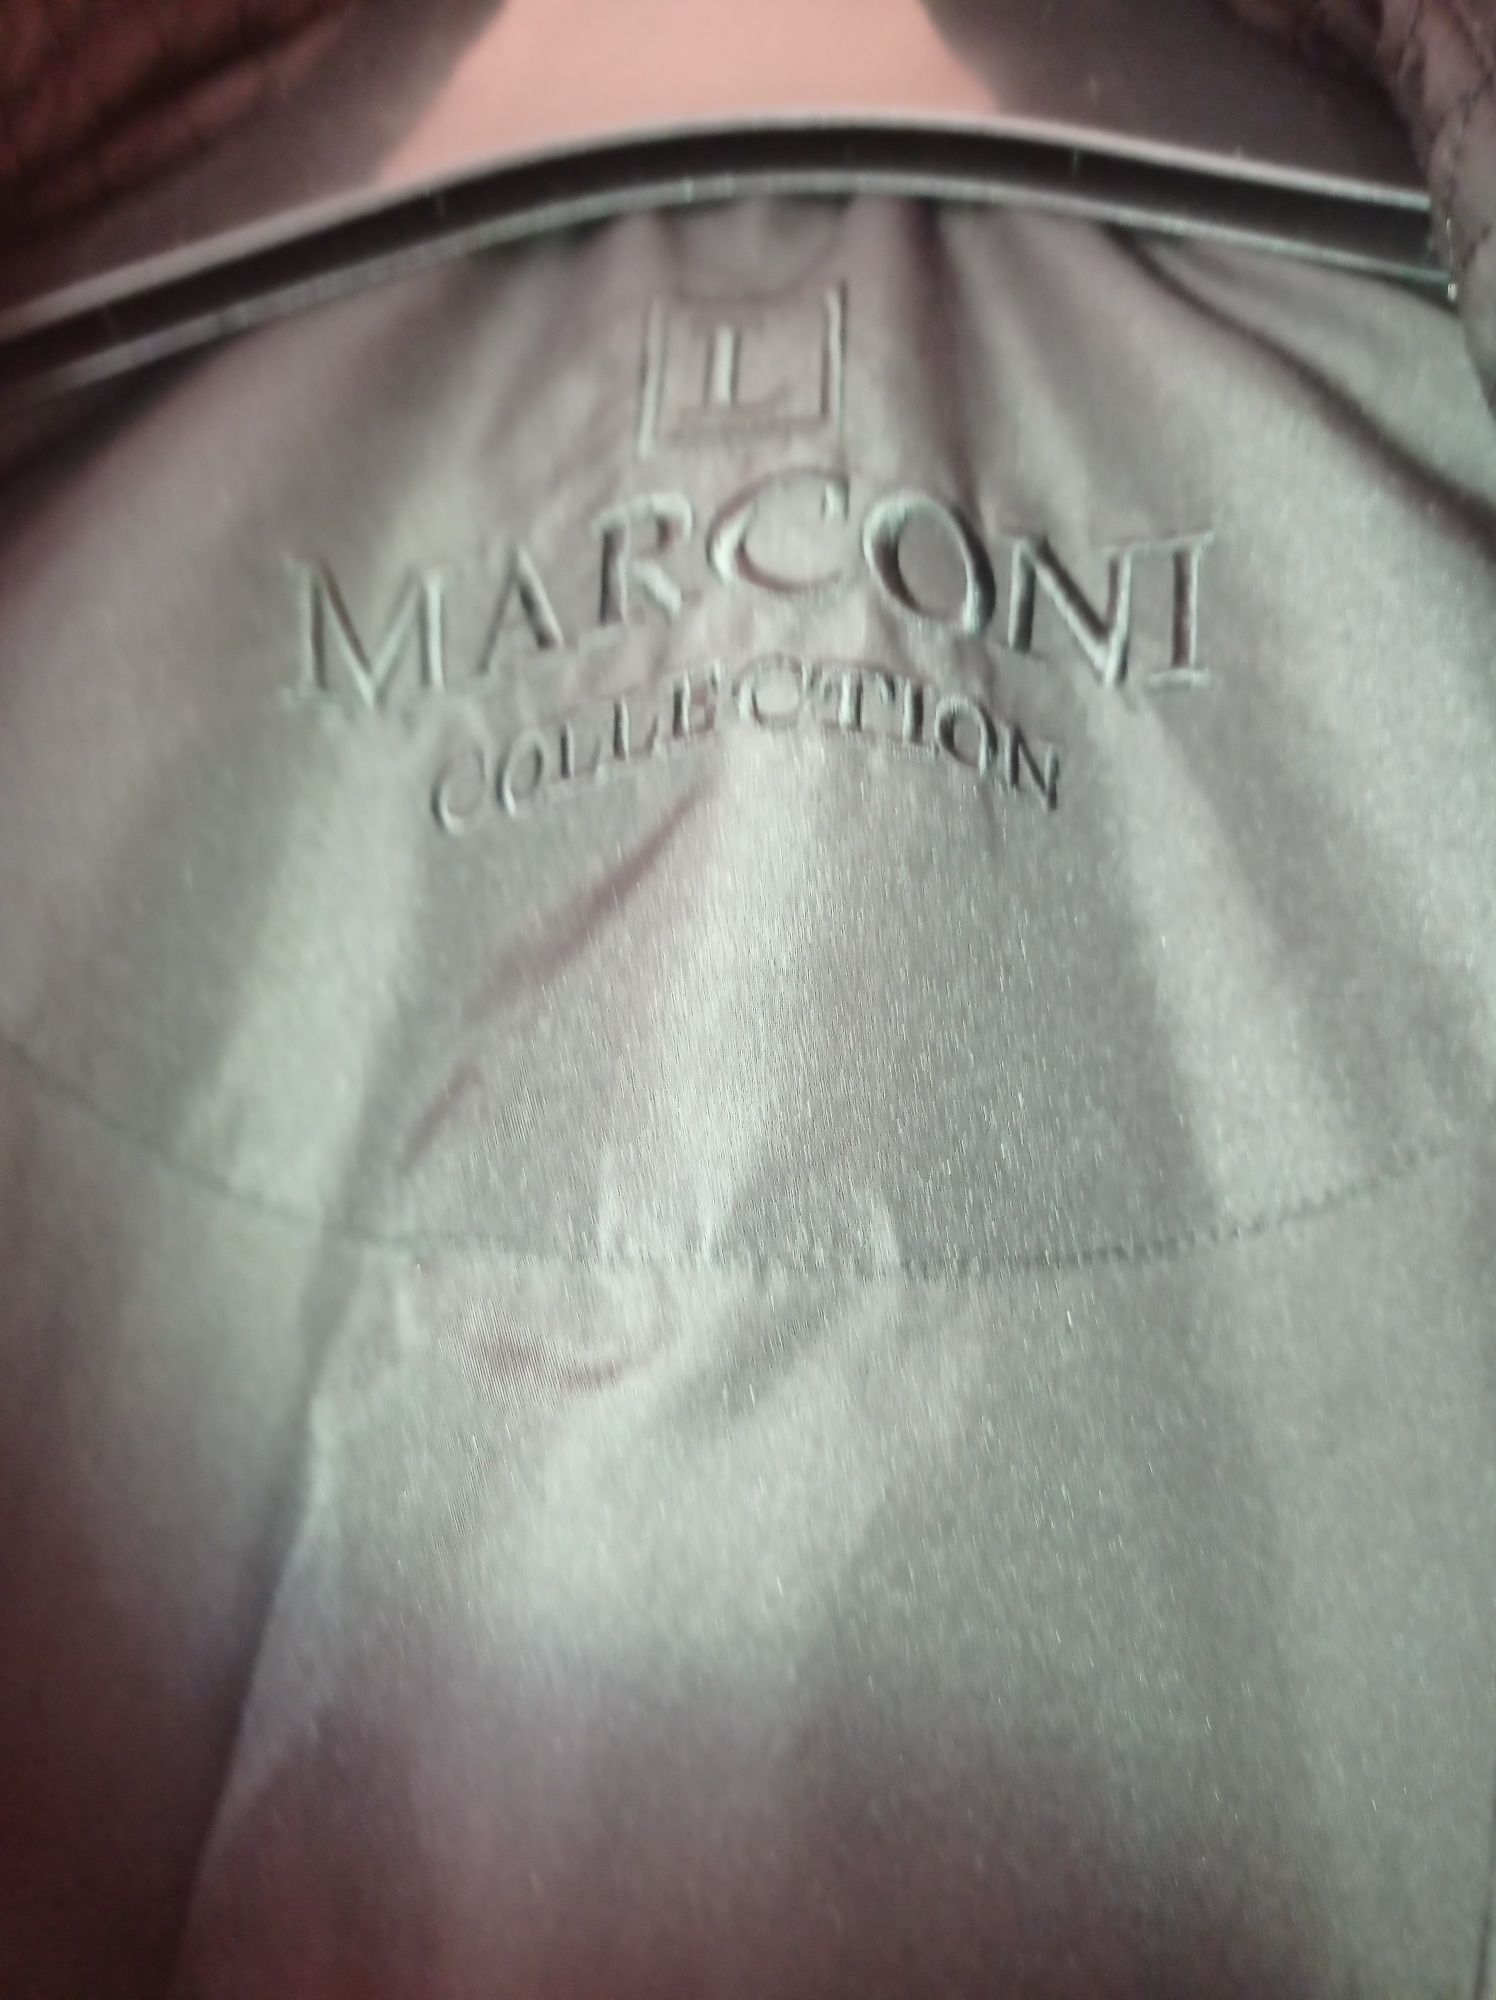 Damska kurtka Marconi używana.